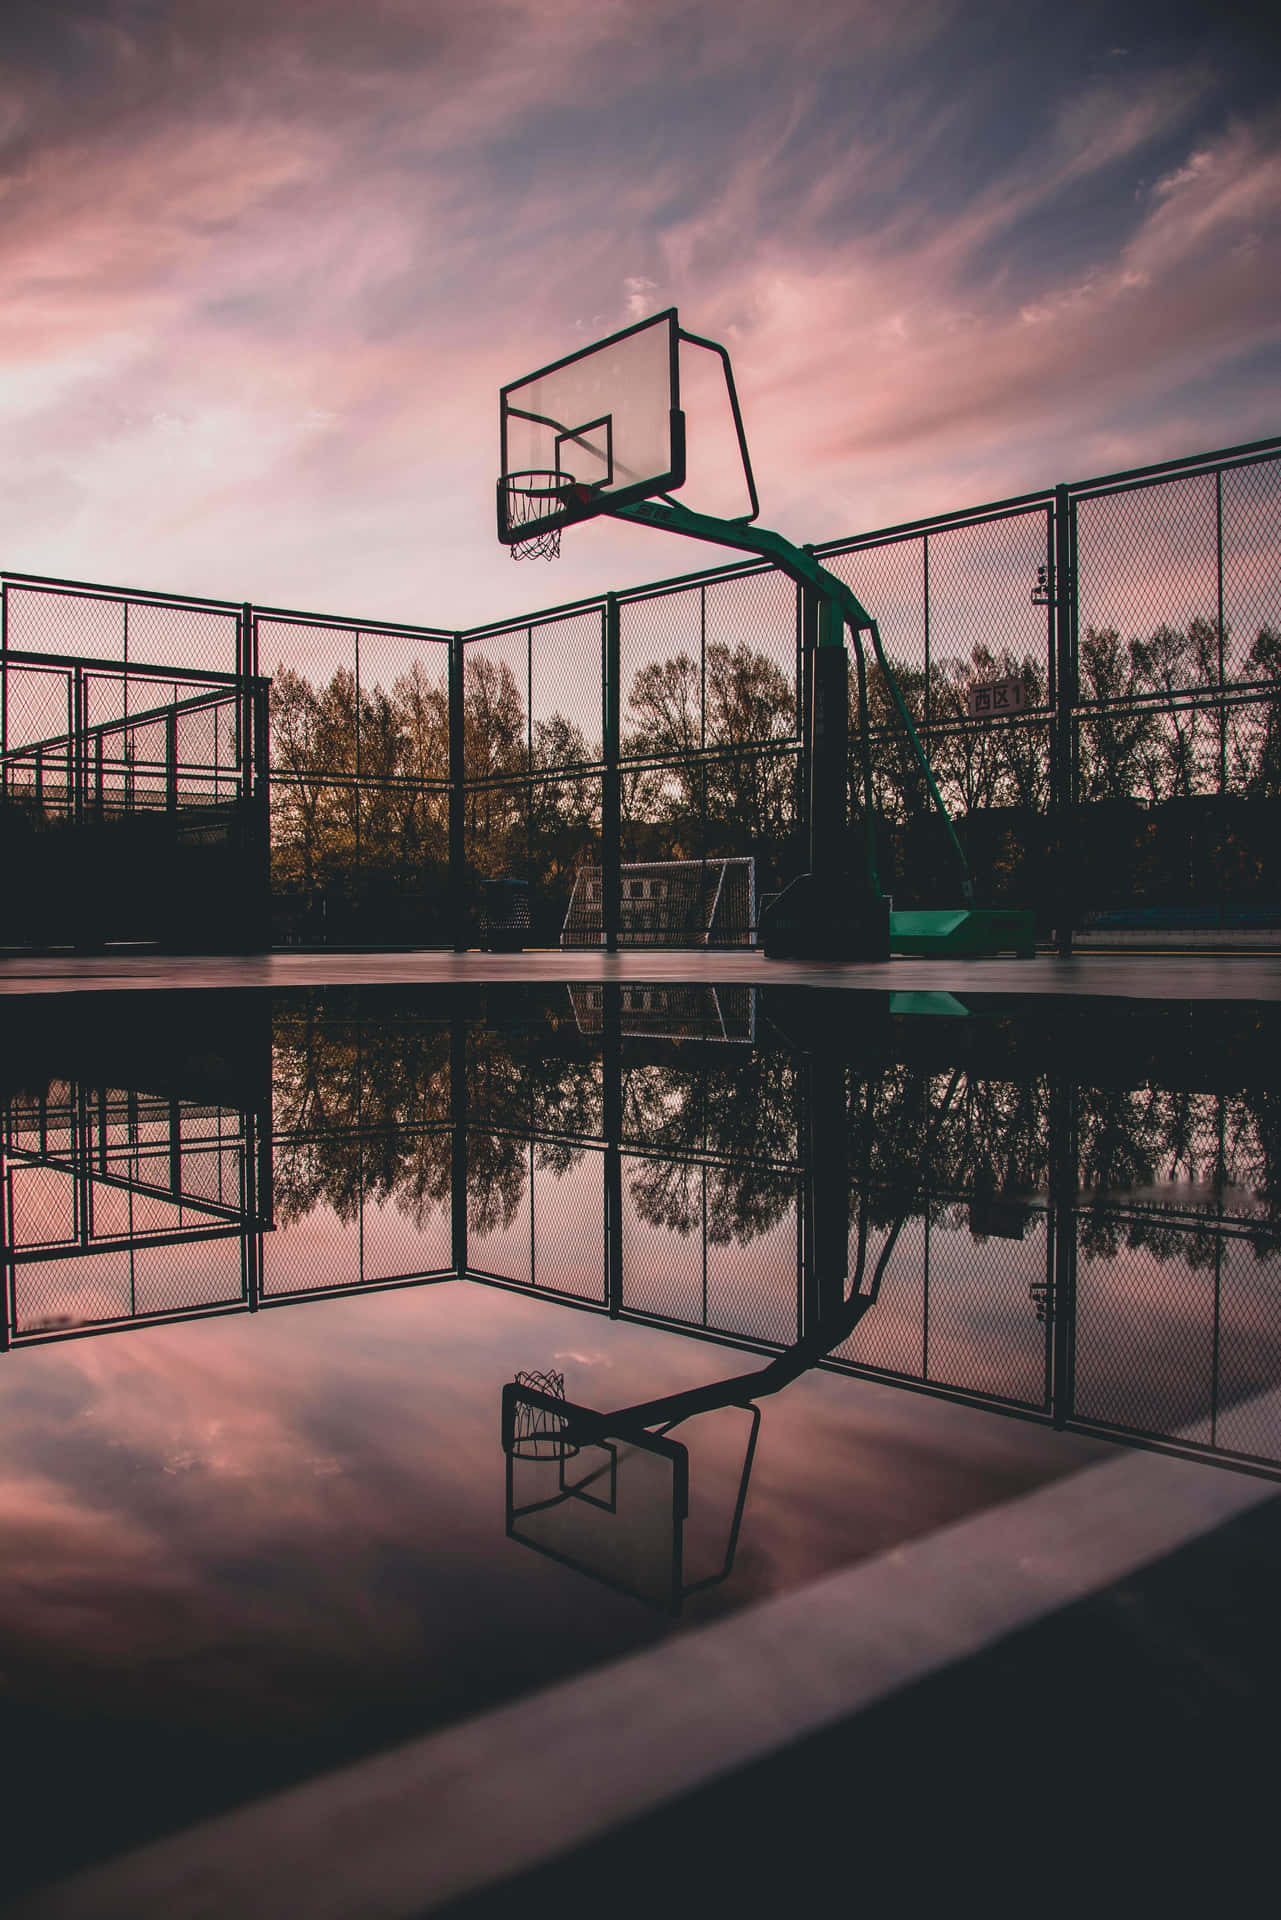 Twilight Basketball Court Reflection Background